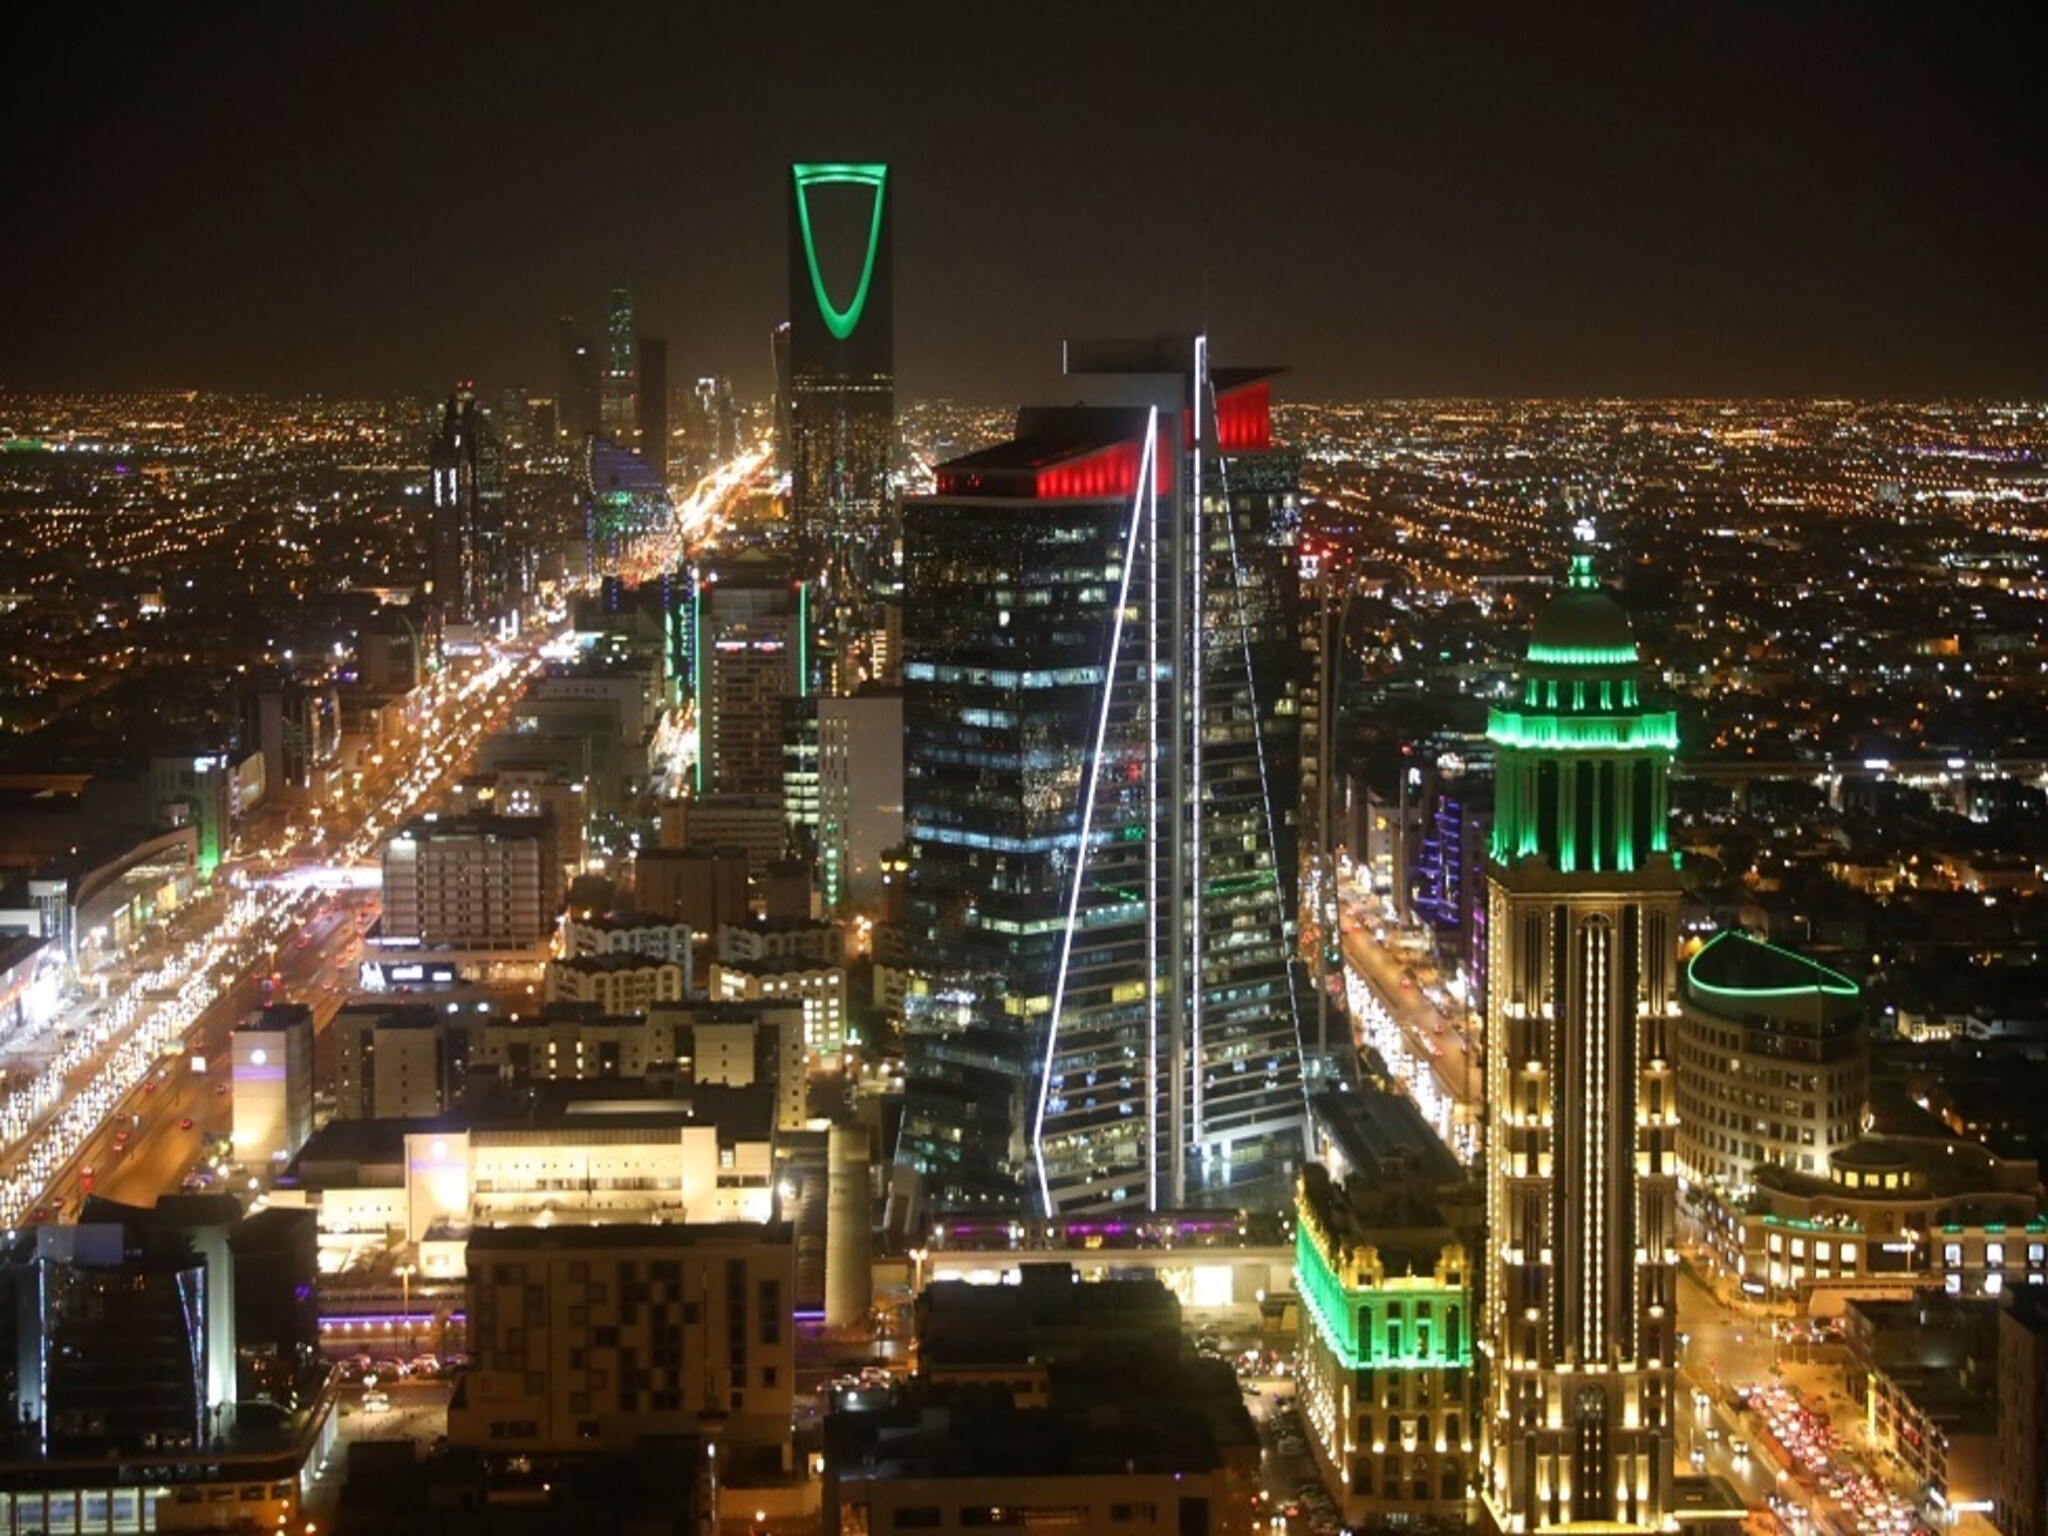 اتحاد الغرف السعودية يوضح تداول معلومات بخروج (458) ألف منشأة من السوق